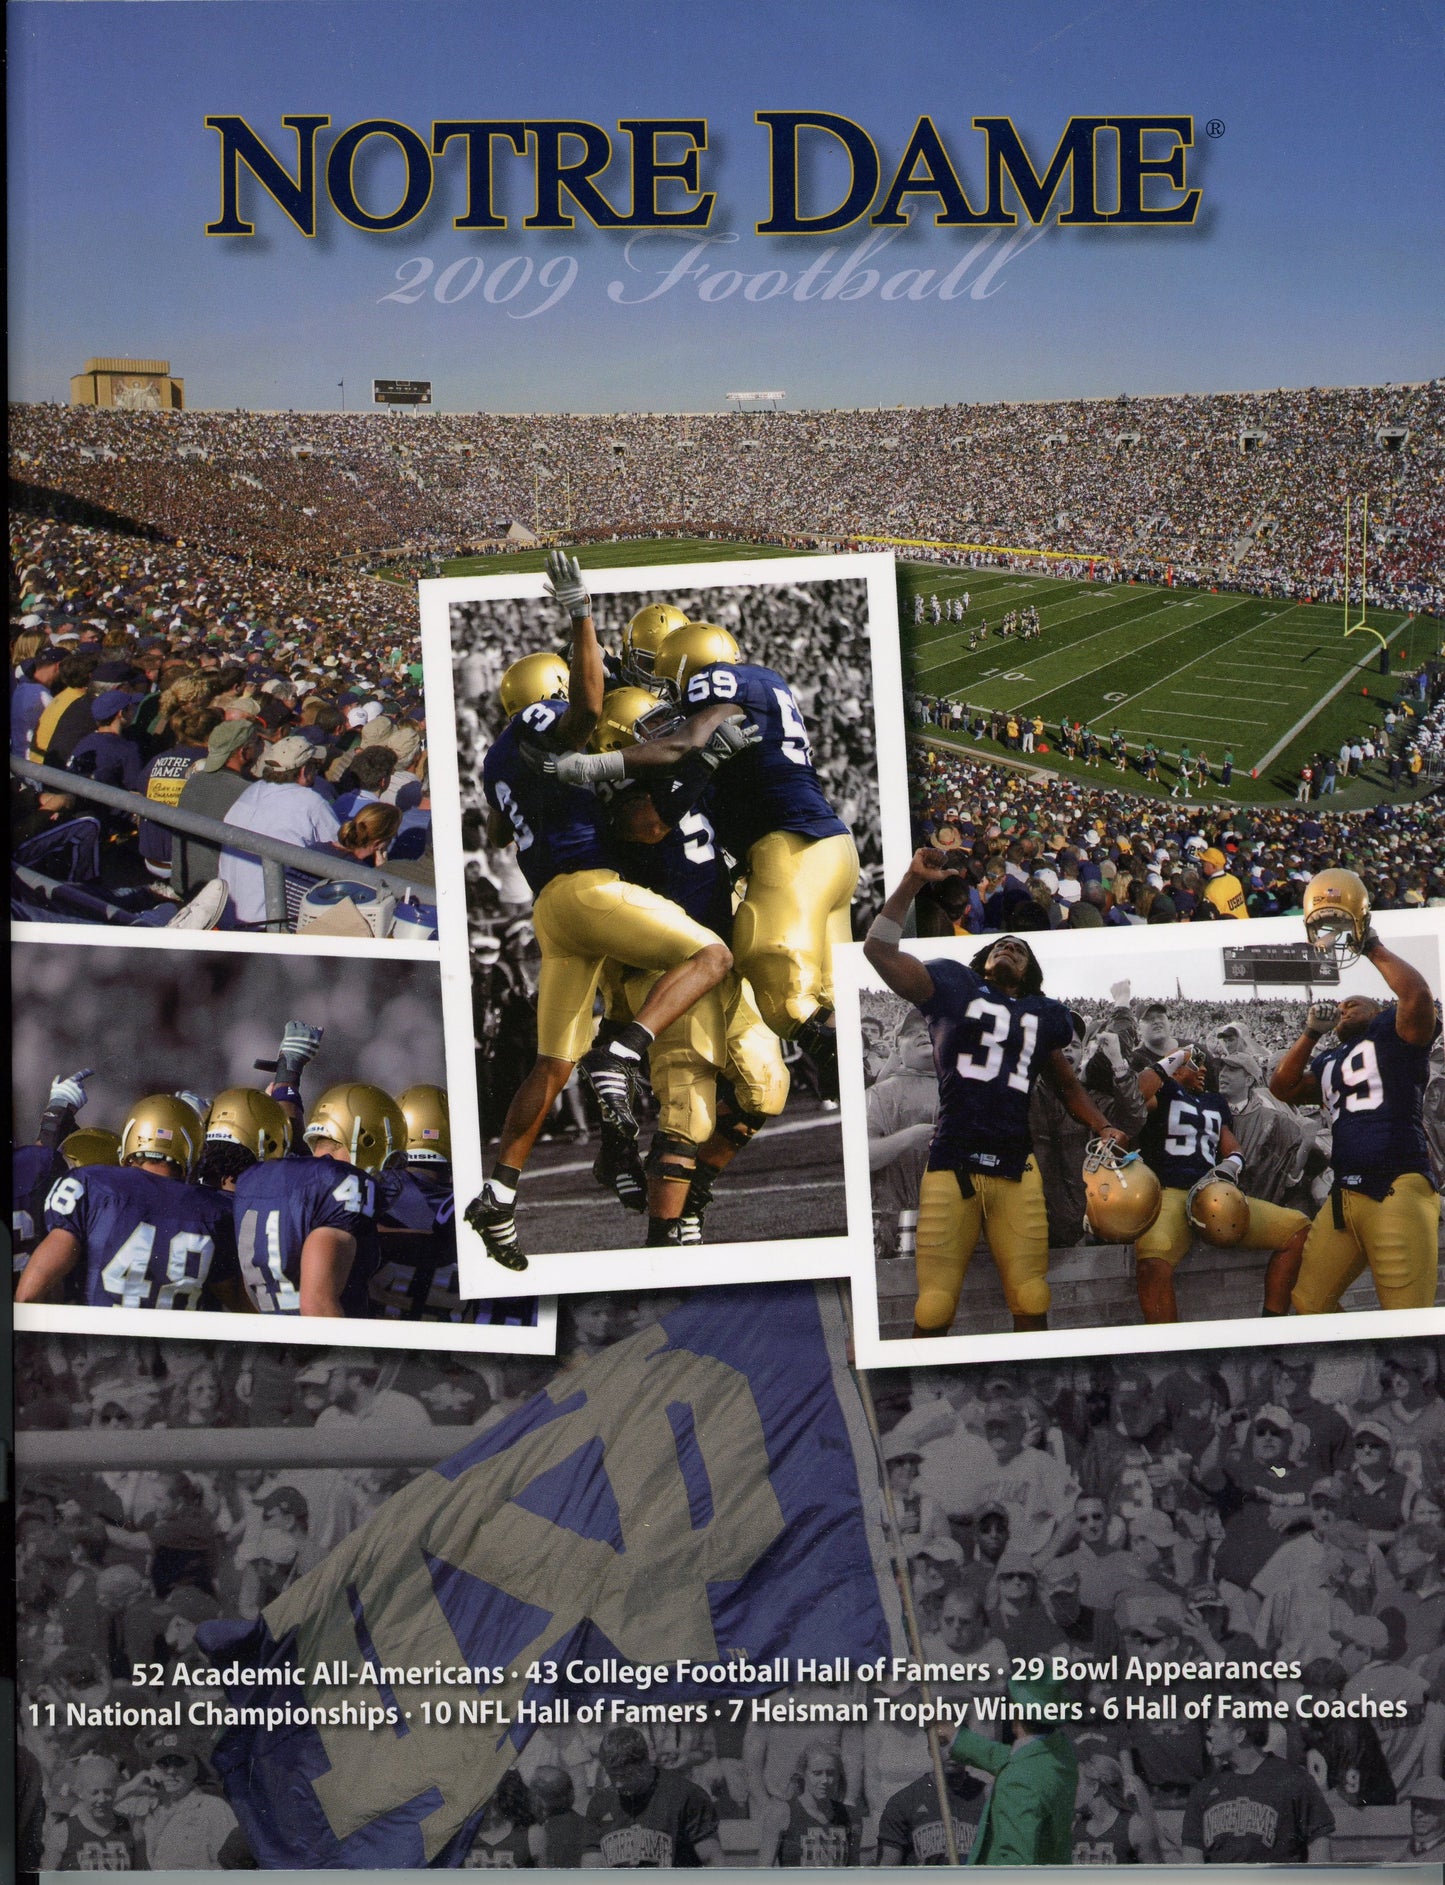 Original 2009 Notre Dame College Football Program Media Guide